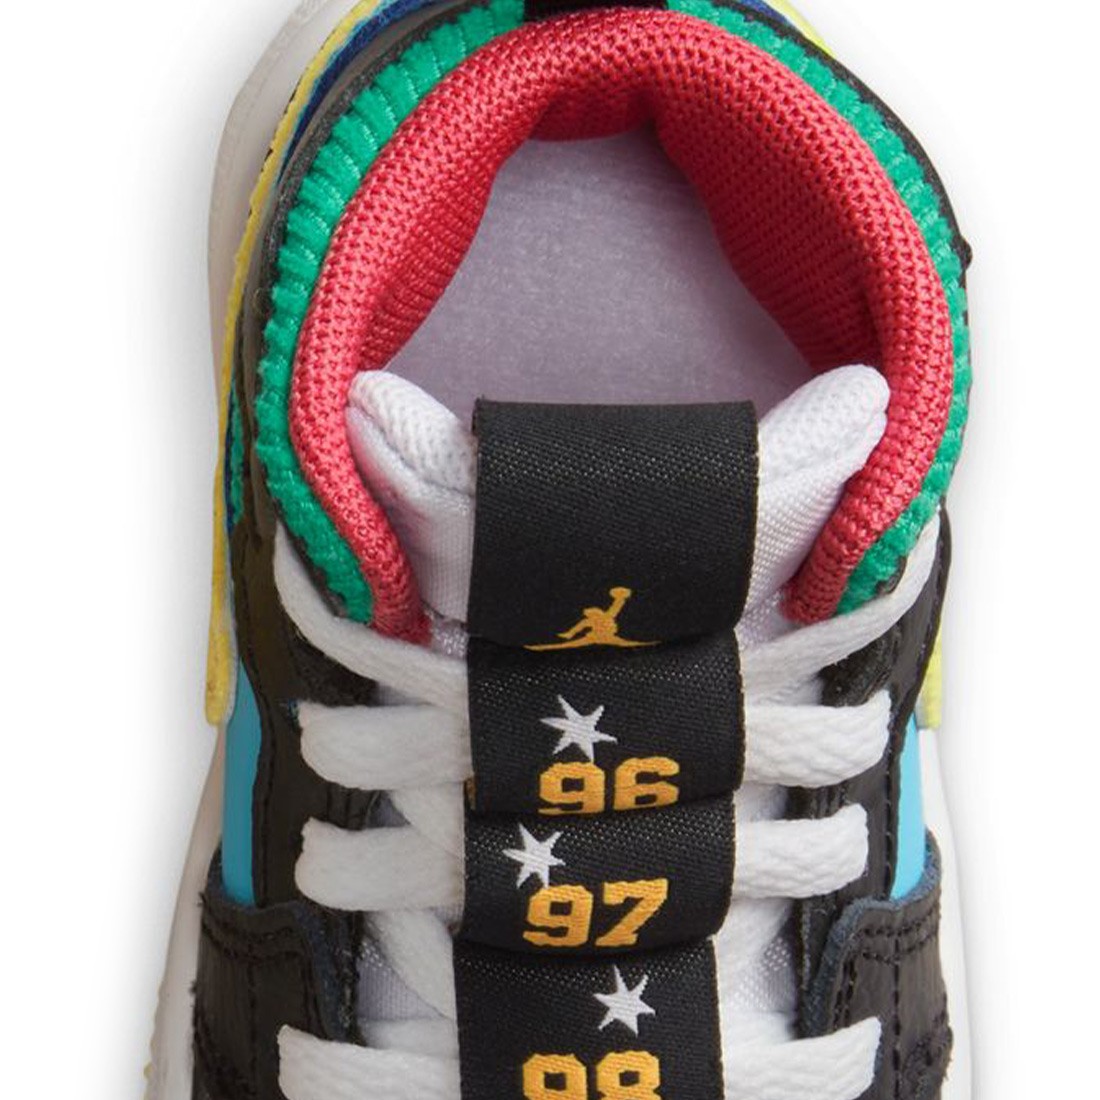 Unas zapatillas para fans de Air Jordan que buscan modelos especiales